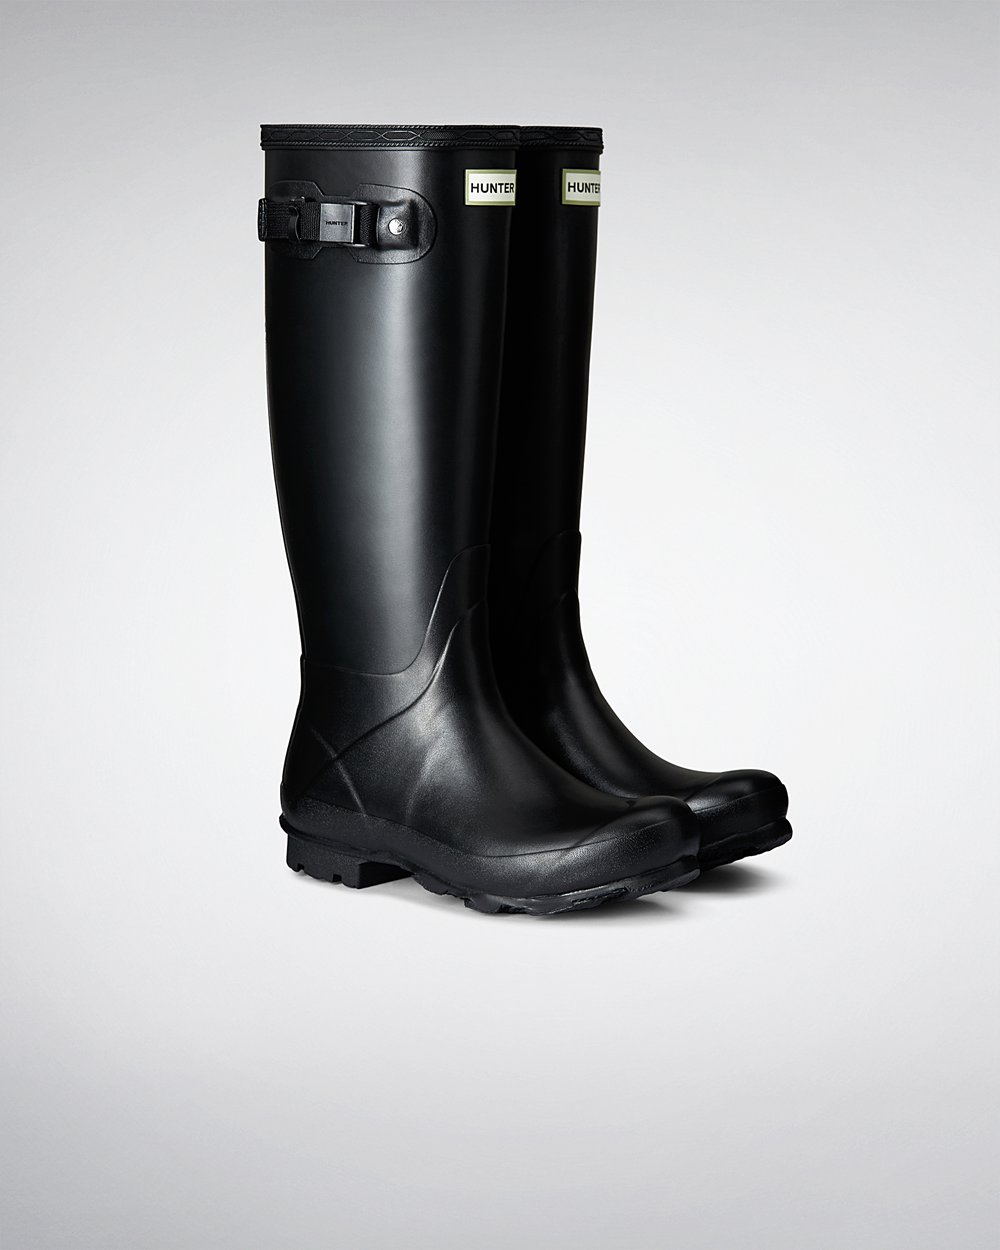 Womens Tall Rain Boots - Hunter Norris Field (93BQIAXVN) - Black